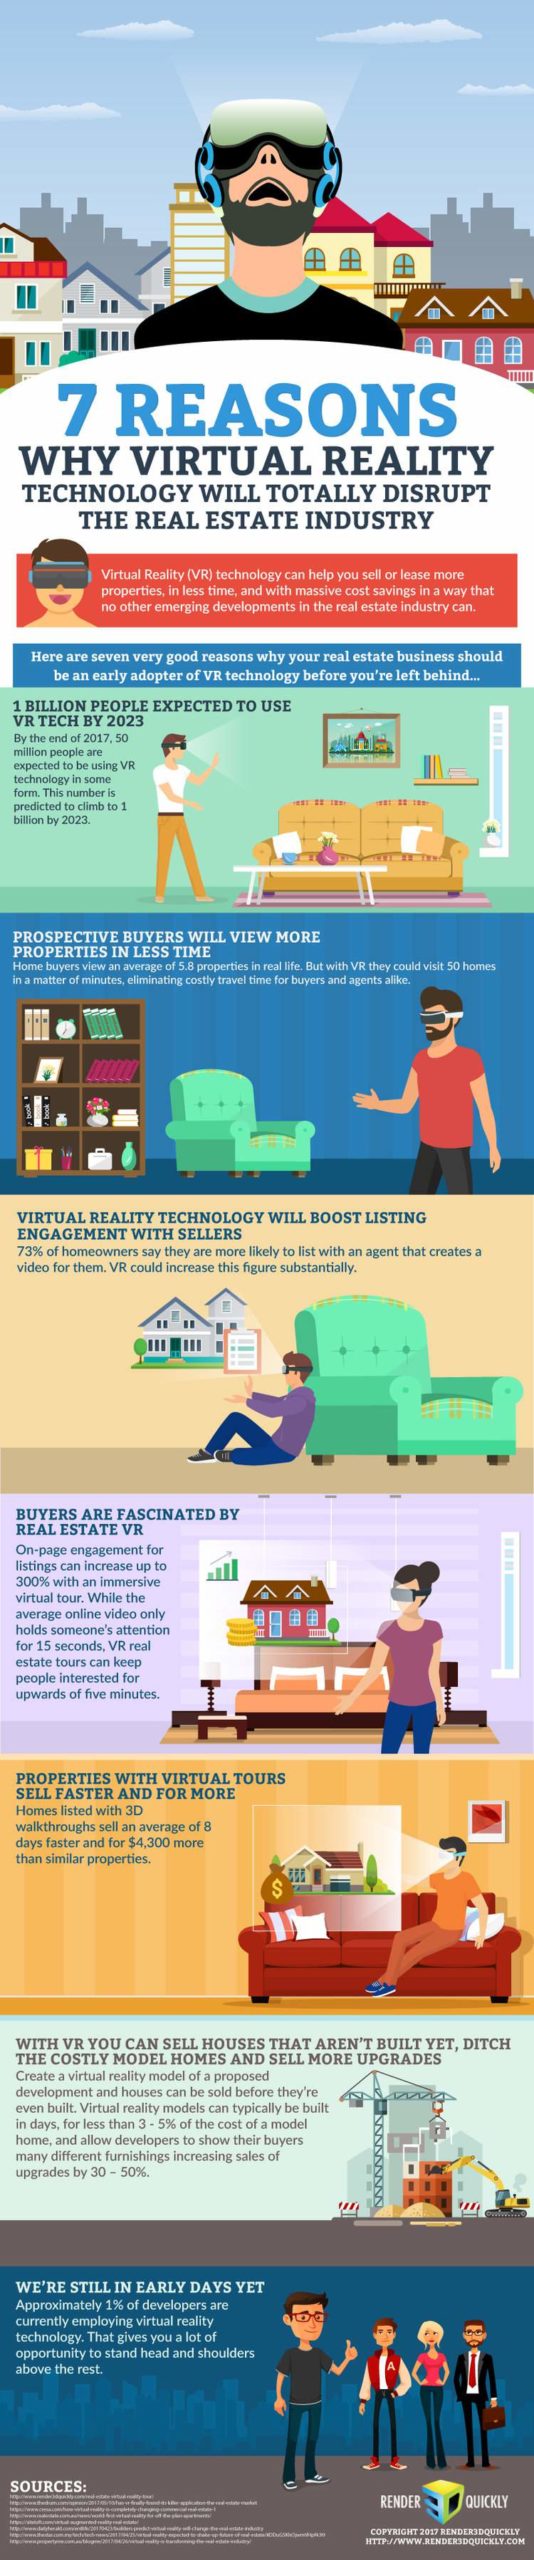 Virtual-Reality-Technology